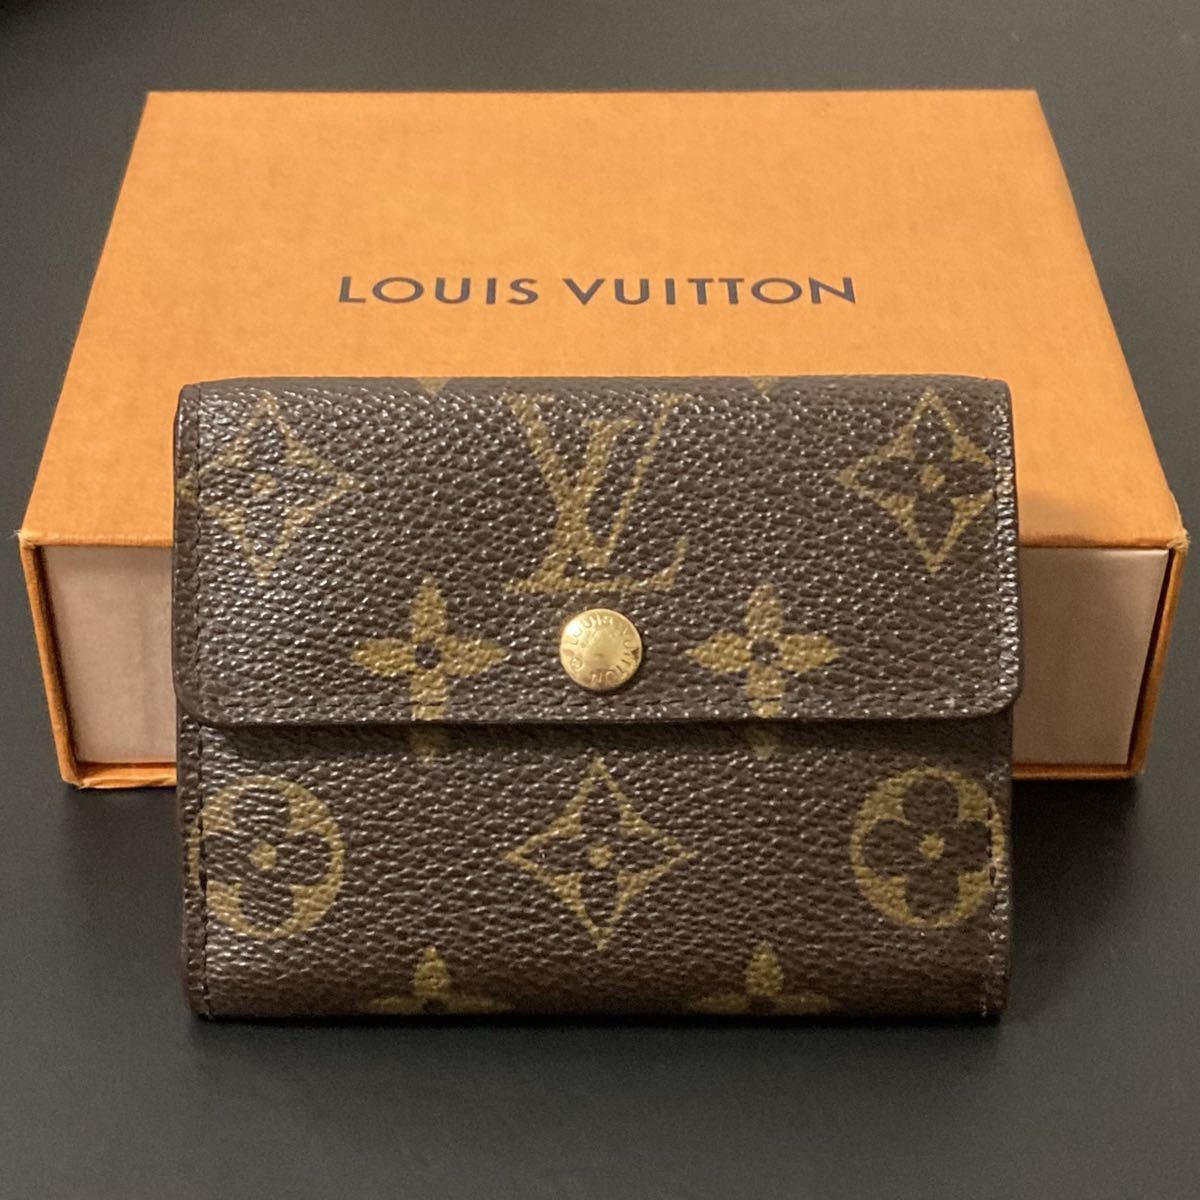 LOUIS VUITTON ラドロー モノグラム M61927 廃盤【433】 財布 ファッション小物 レディース 流行サイト